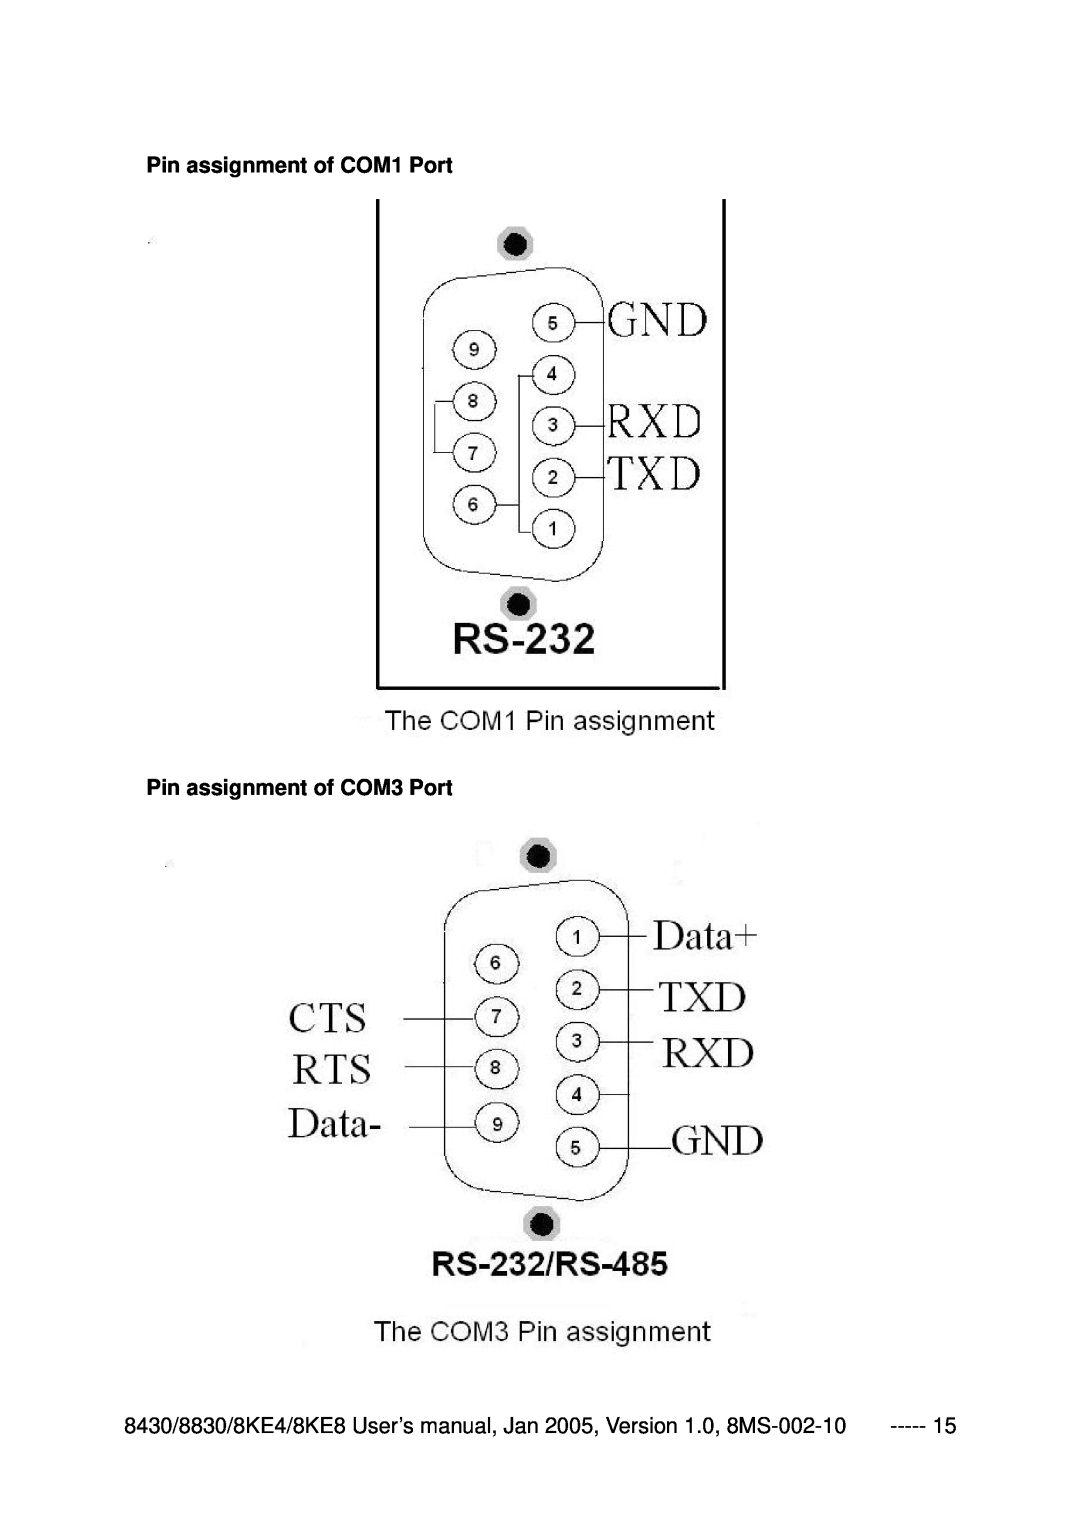 ICP DAS USA 8830, 8KE8, 8KE4, 8430 user manual Pin assignment of COM1 Port Pin assignment of COM3 Port 